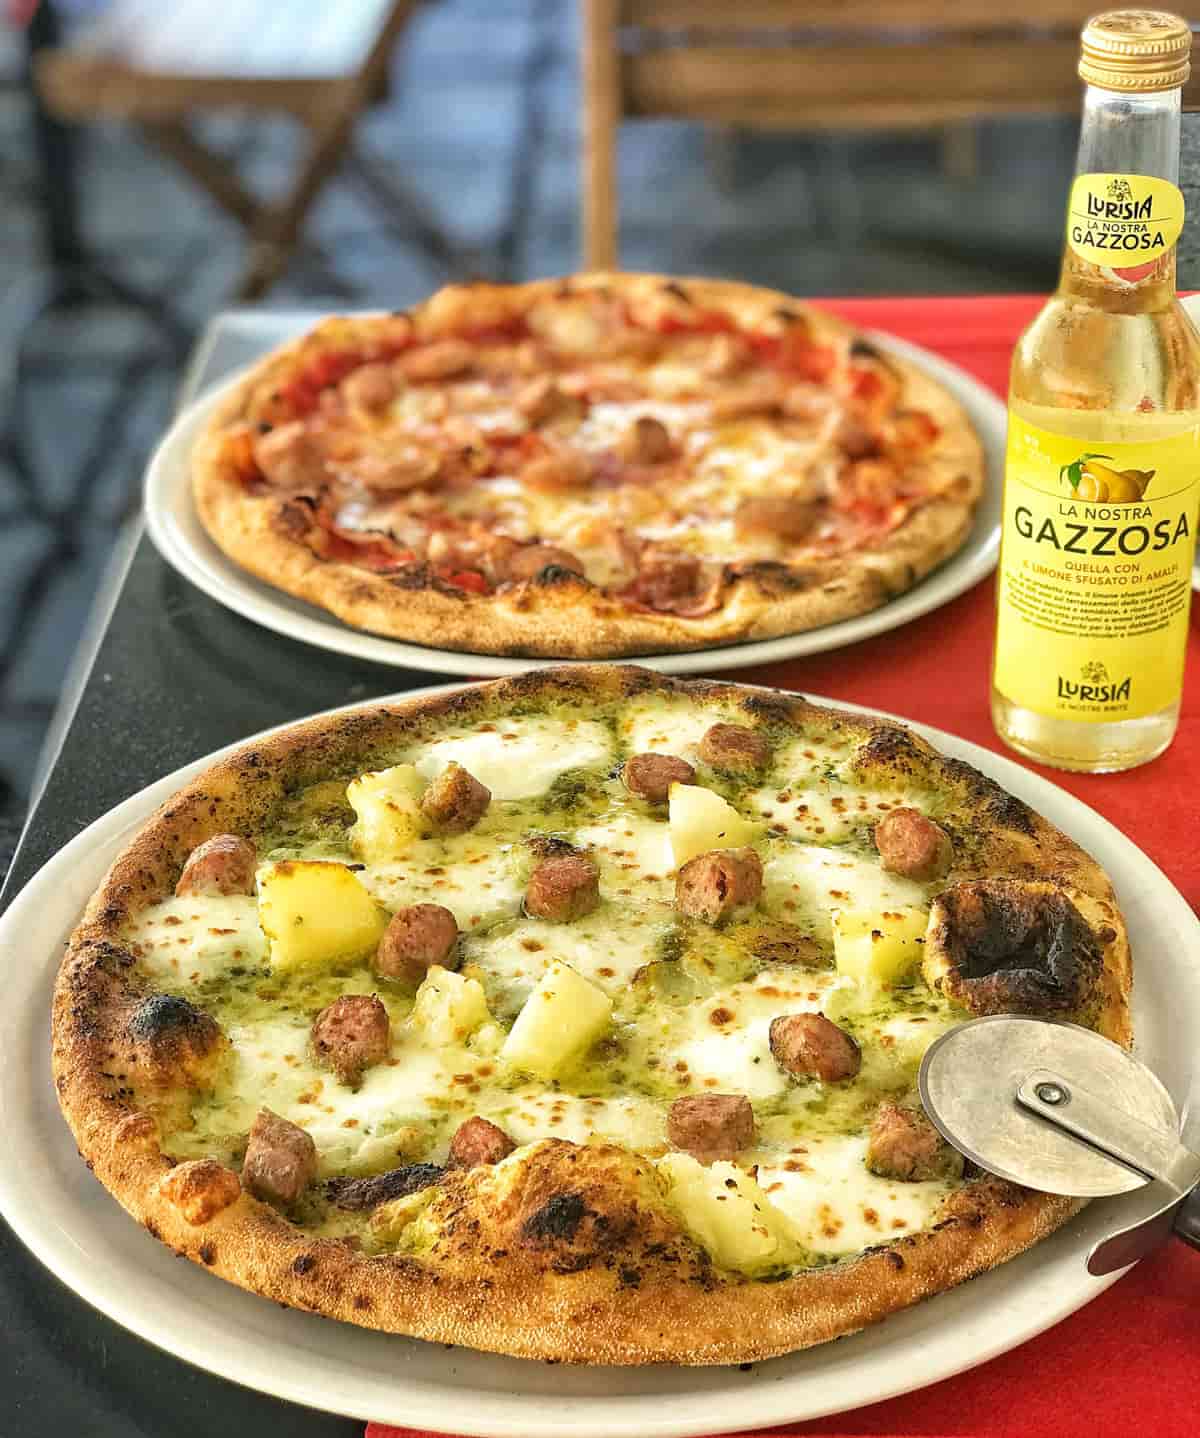 Pizzeria ad Hoc a Torino per la pizza con bagna cauda piemontese